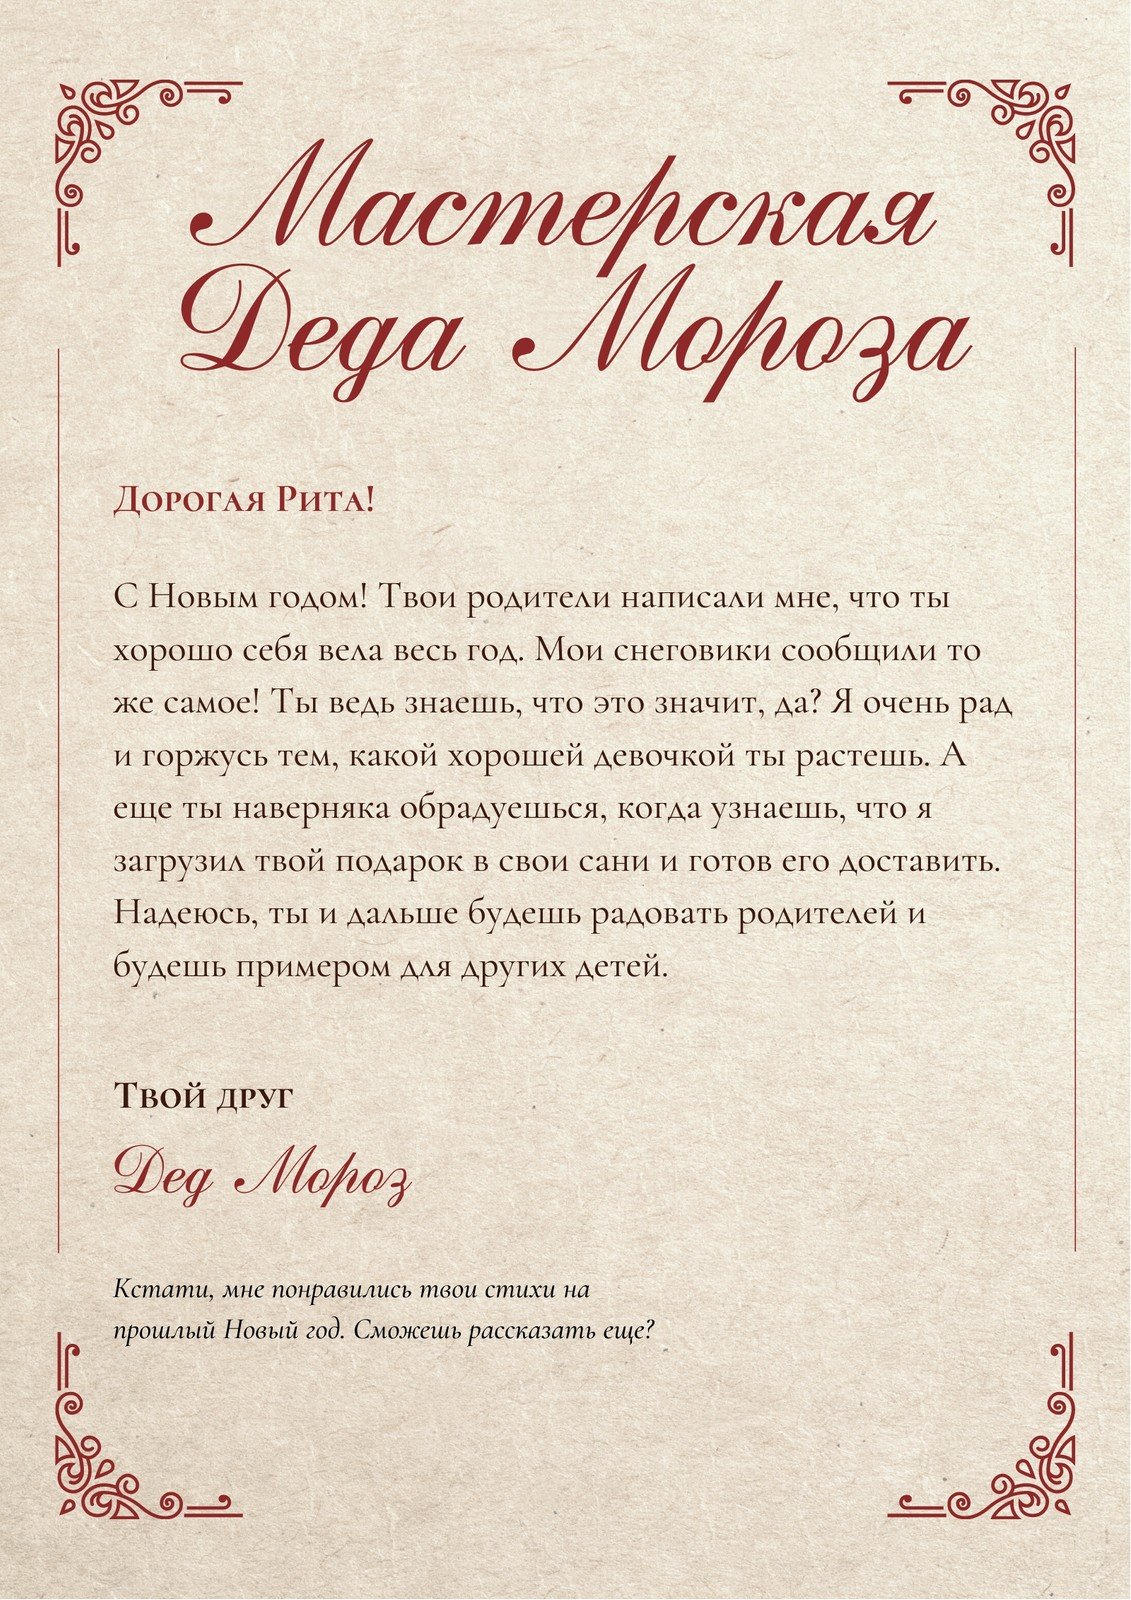 Письмо Деду Морозу + конверт (шаблон для печати)